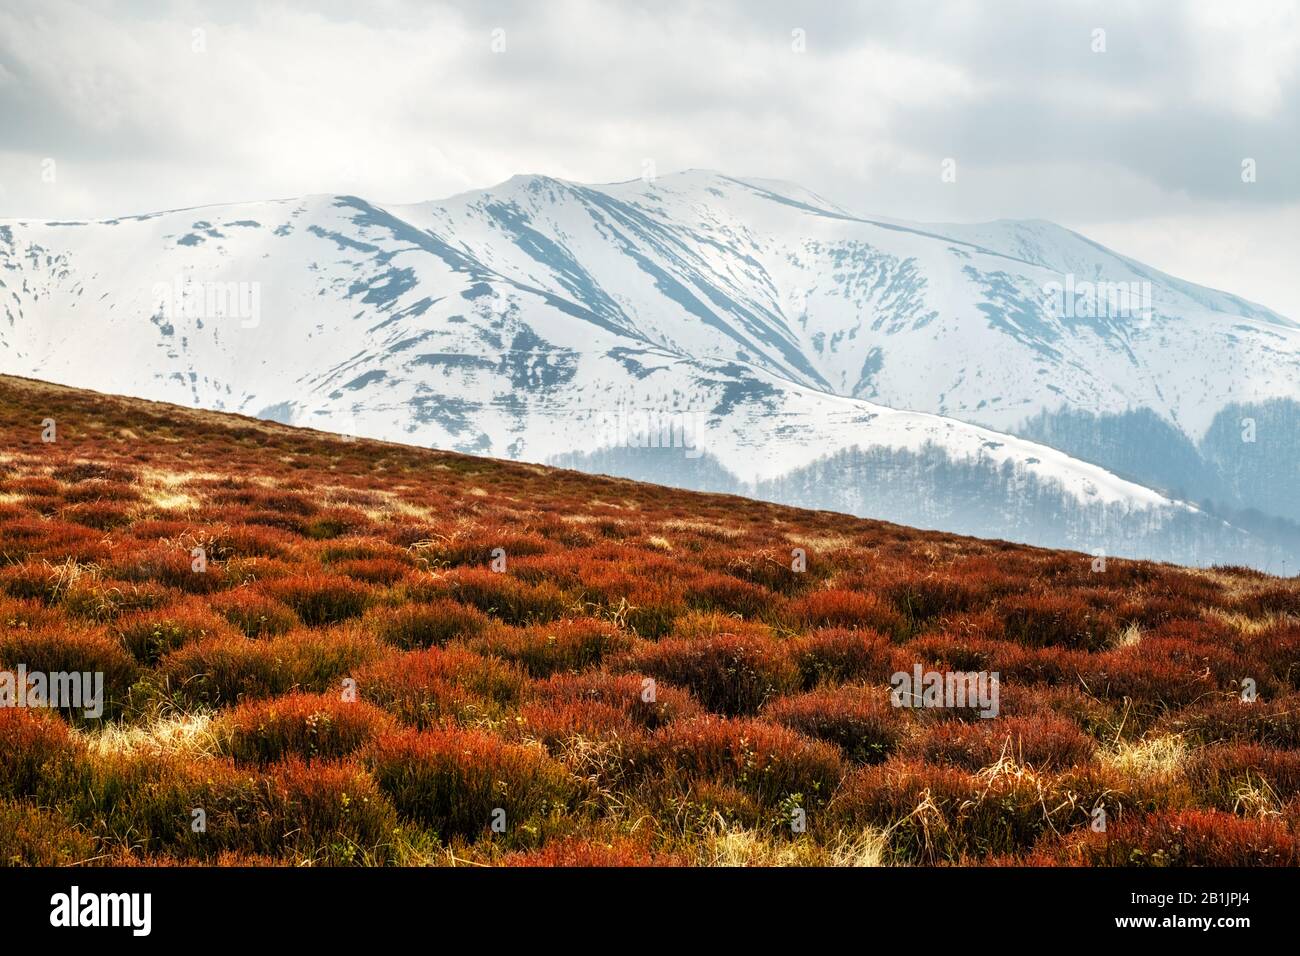 Vue sur les collines herbeuses avec des chaussettes orange et des montagnes enneigées en arrière-plan. Scène de printemps spectaculaire. Photographie de paysage Banque D'Images